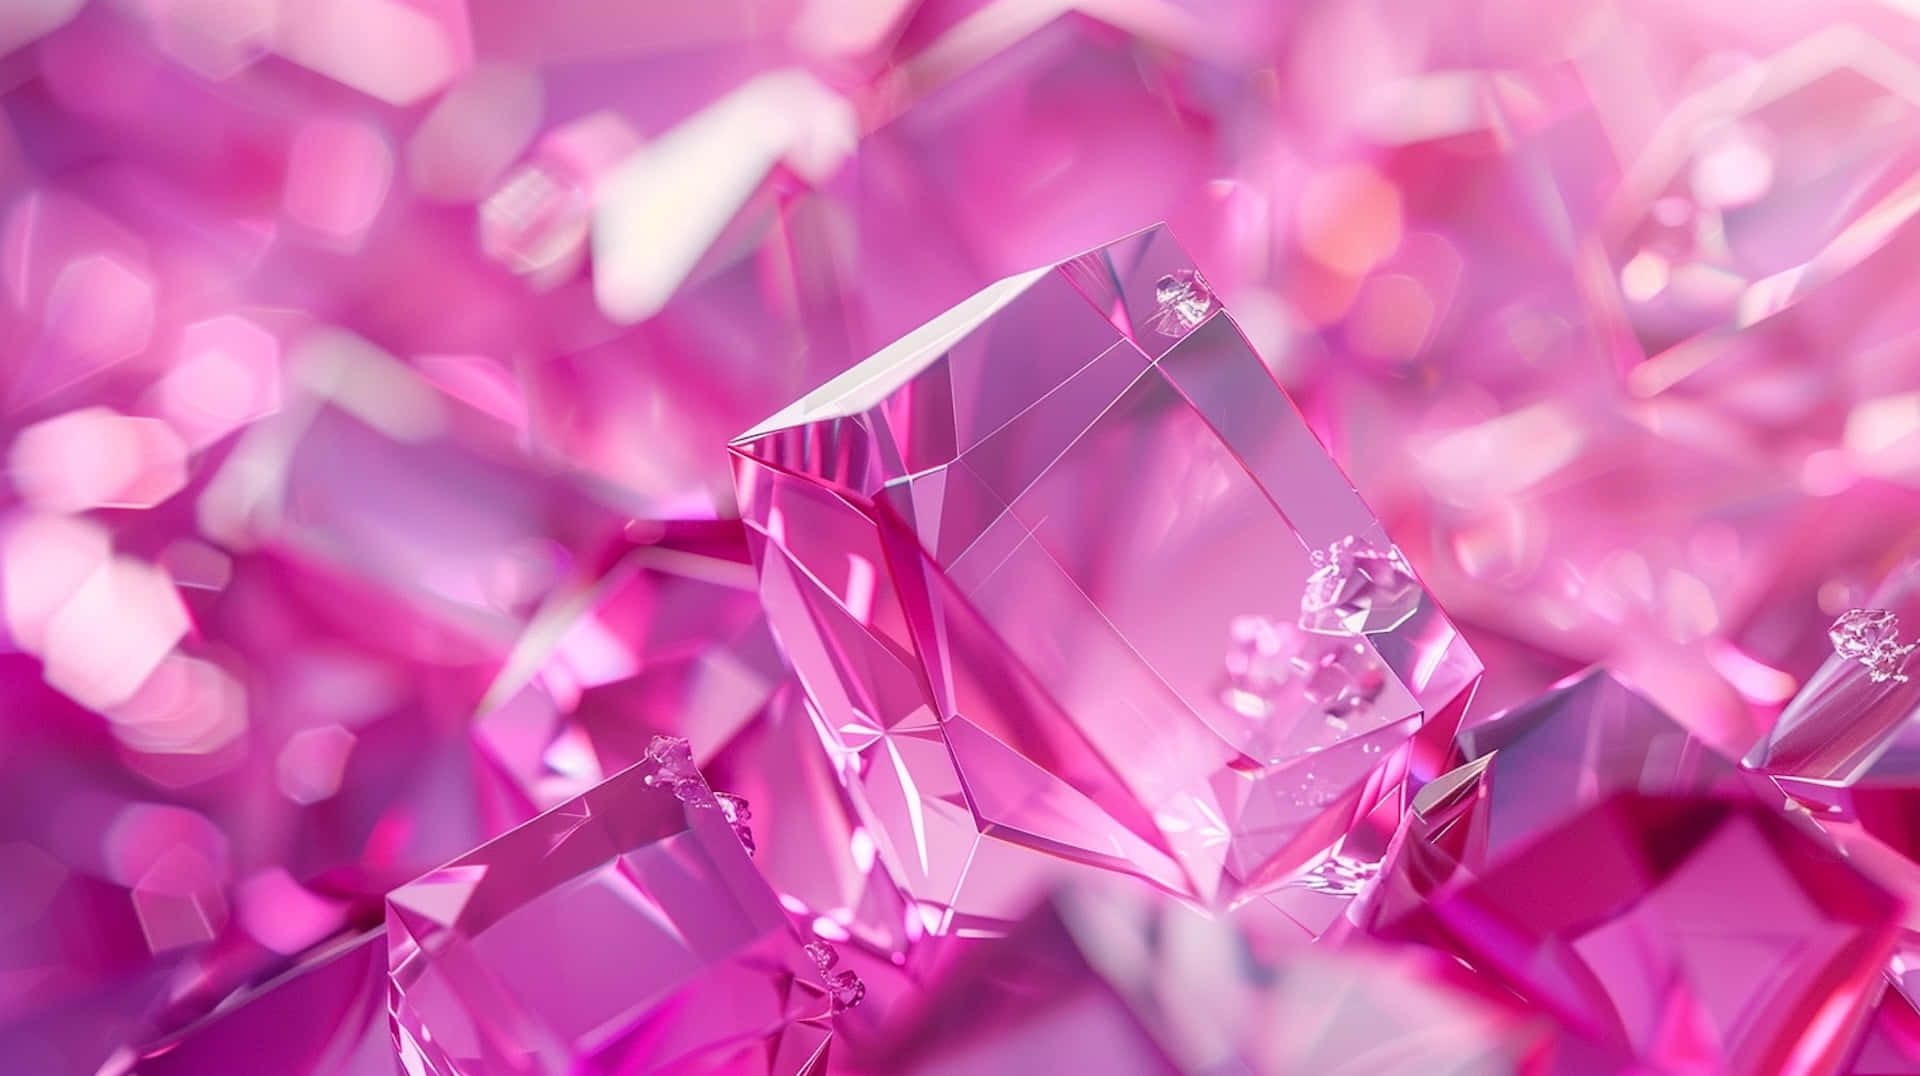 Vibrant Pink Crystals3 D Render Wallpaper